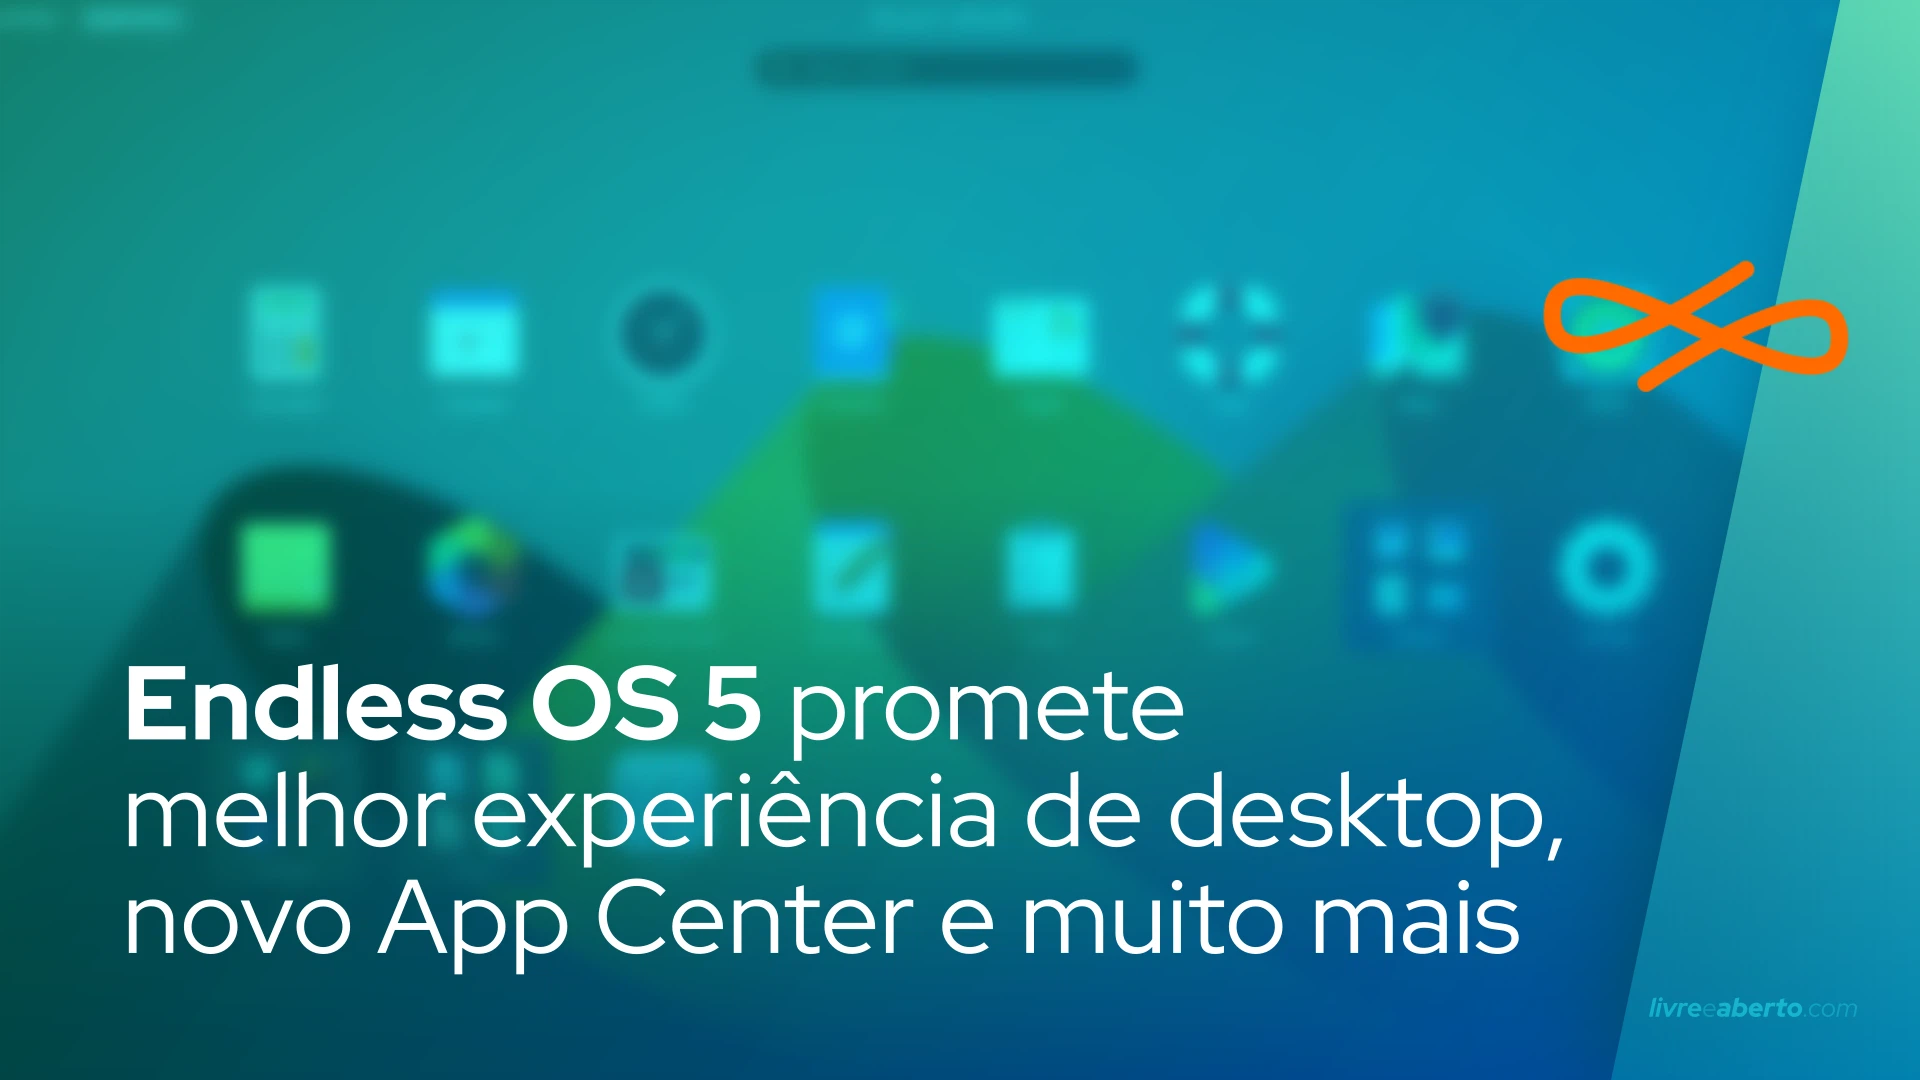 Endless OS 5 promete experiência de desktop atualizada, novo App Center e muito mais